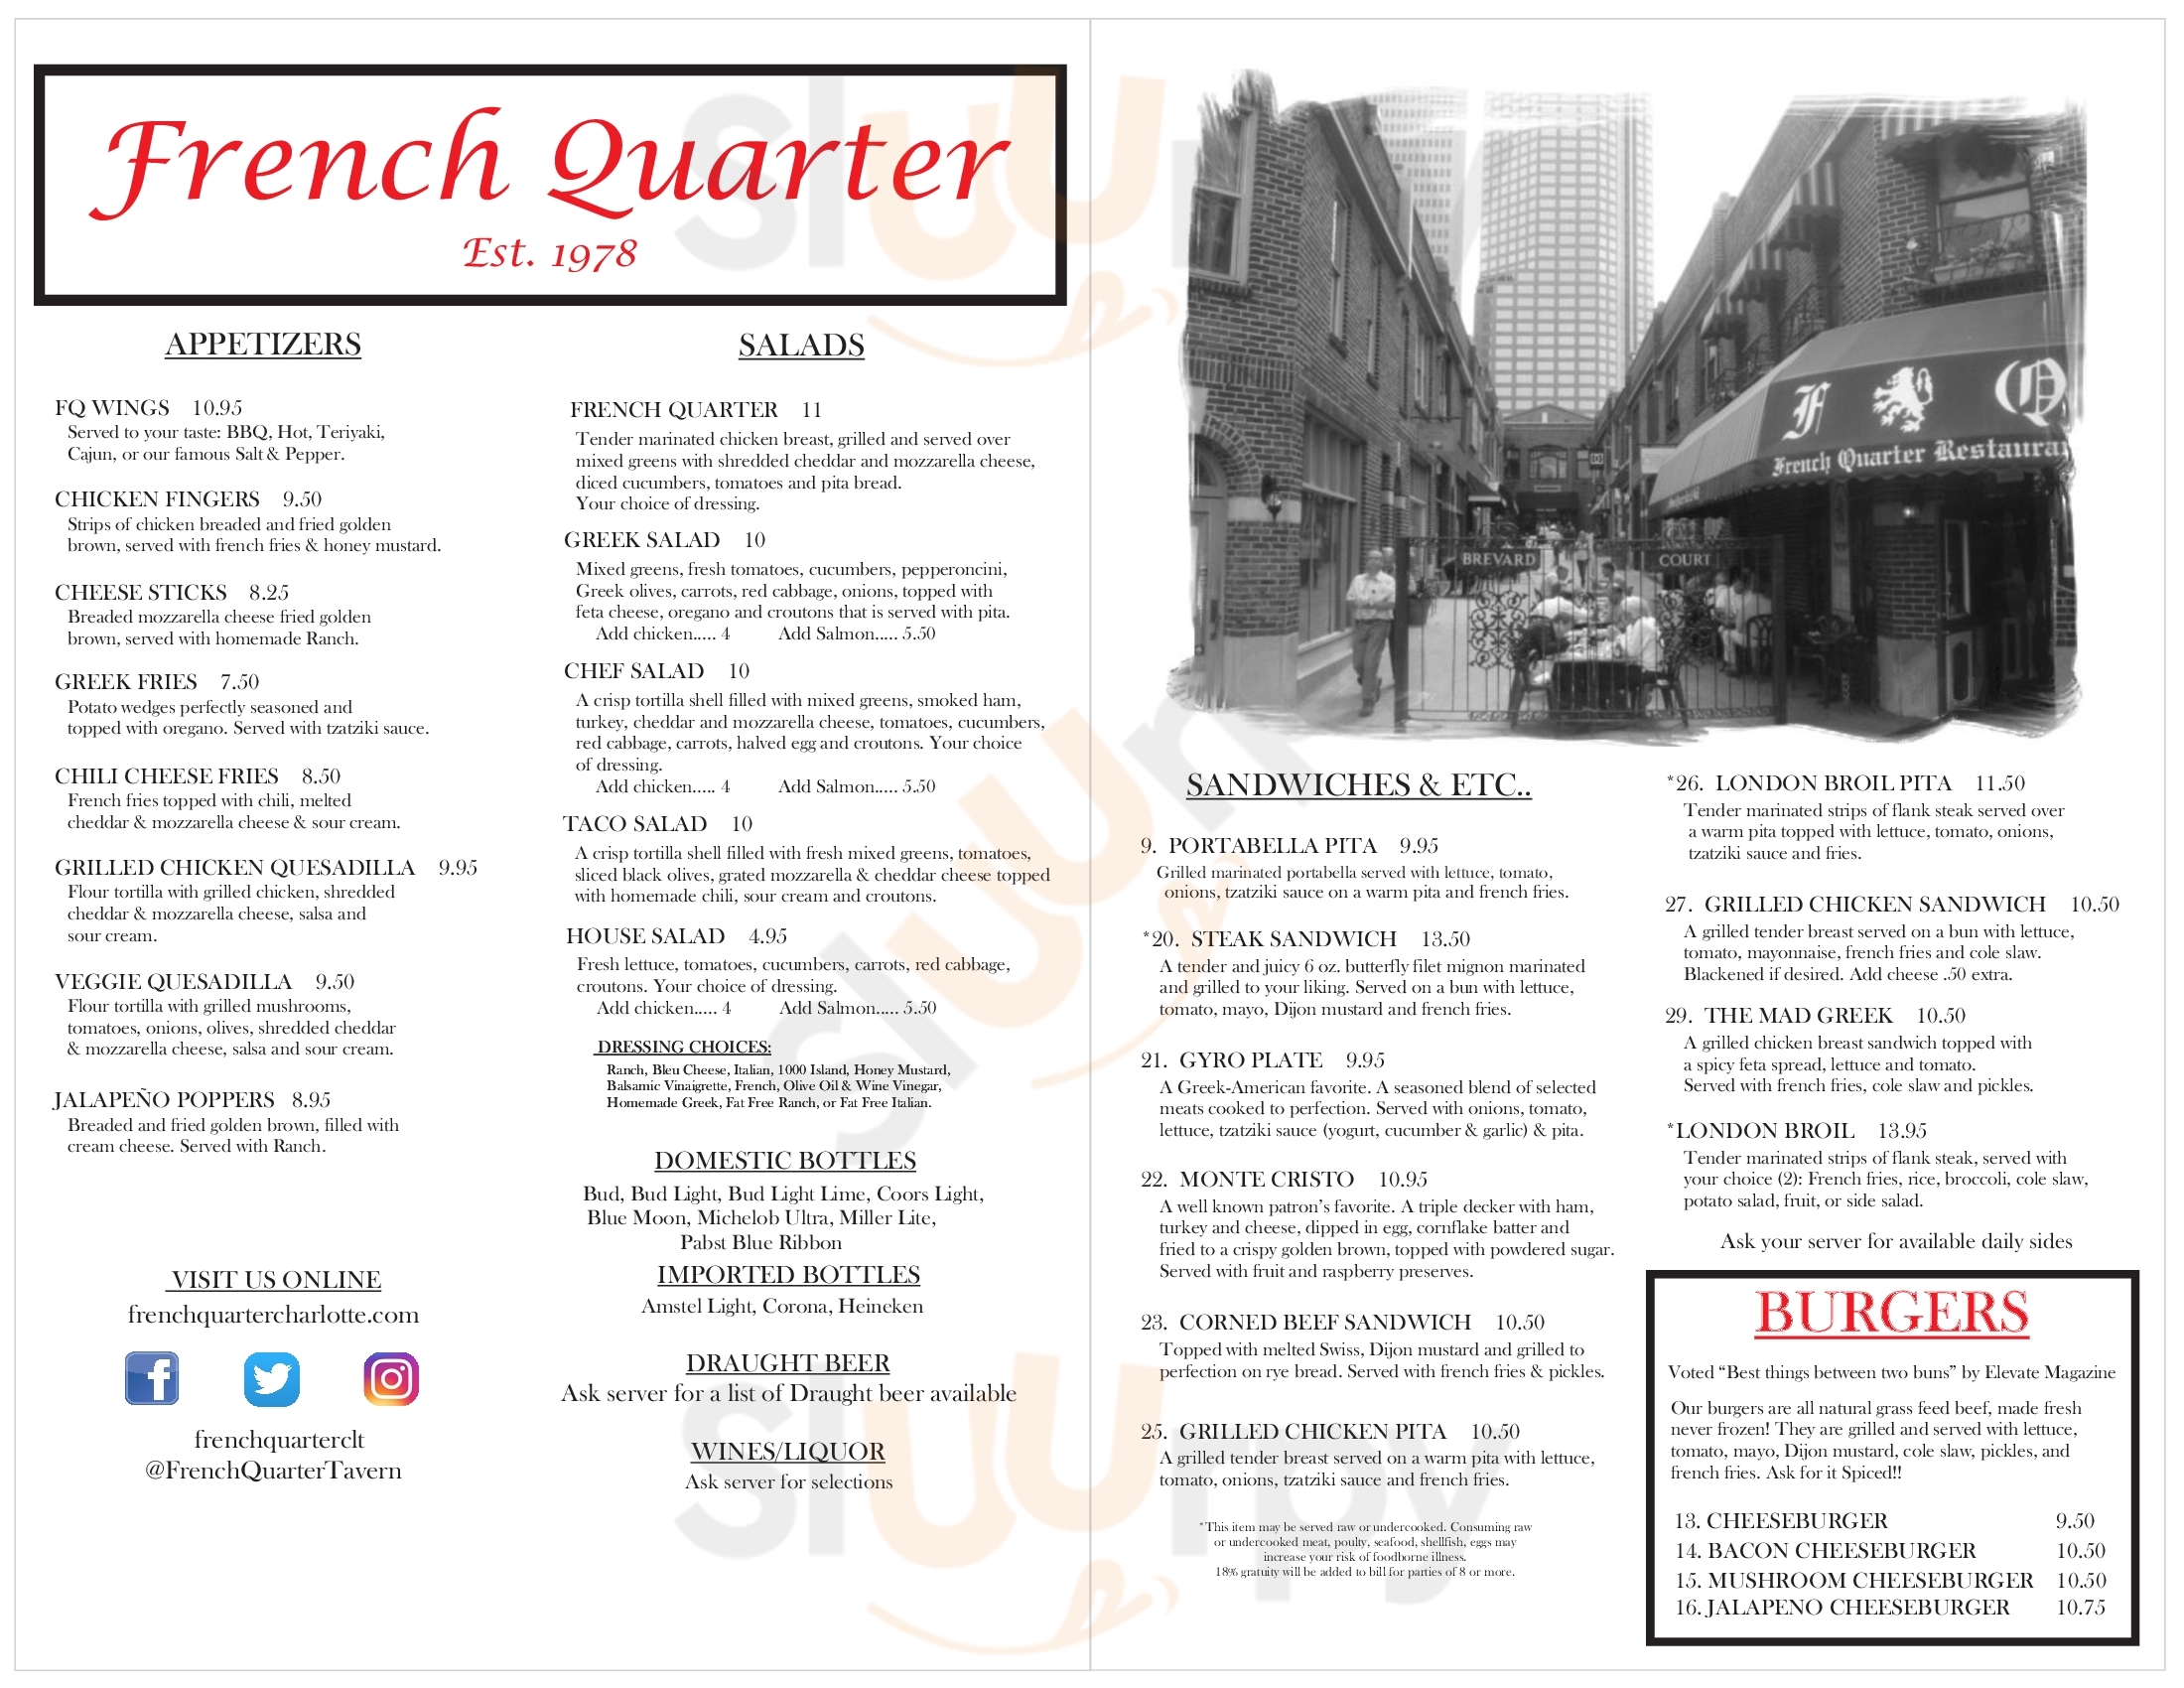 French Quarter Restaurant Charlotte Menu - 1